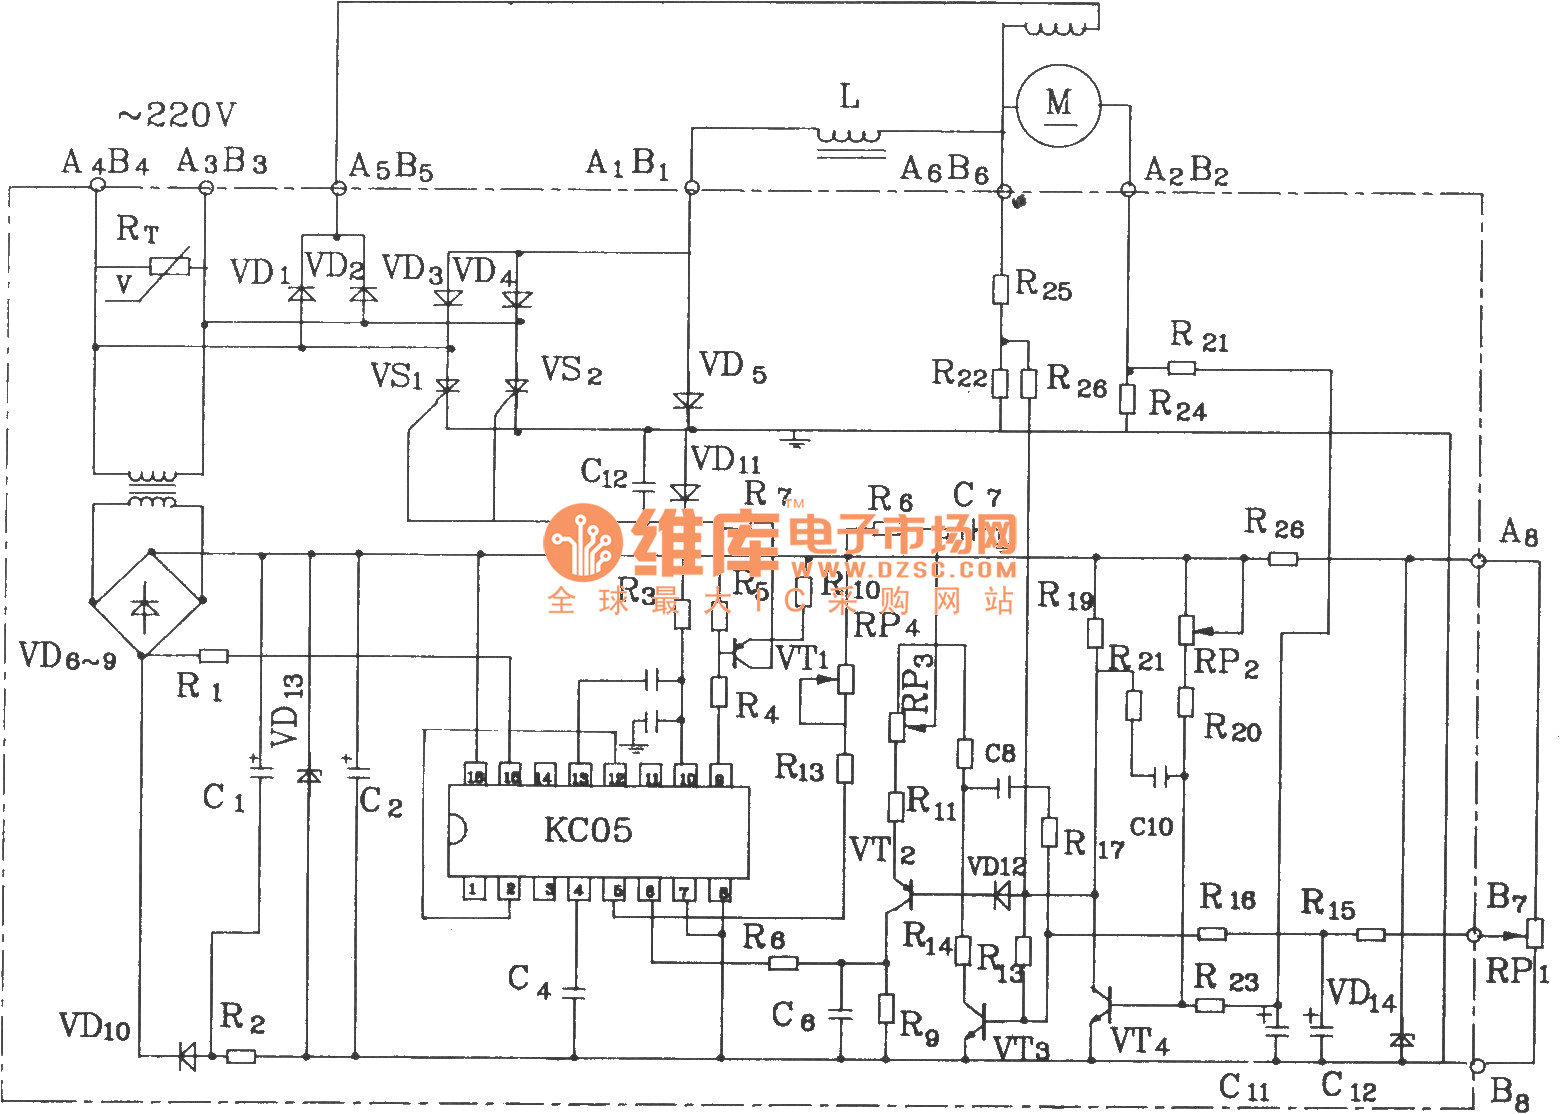 motor control circuit diagram pdf wiring diagrams lift control panel wiring diagram pdf control wiring diagram pdf